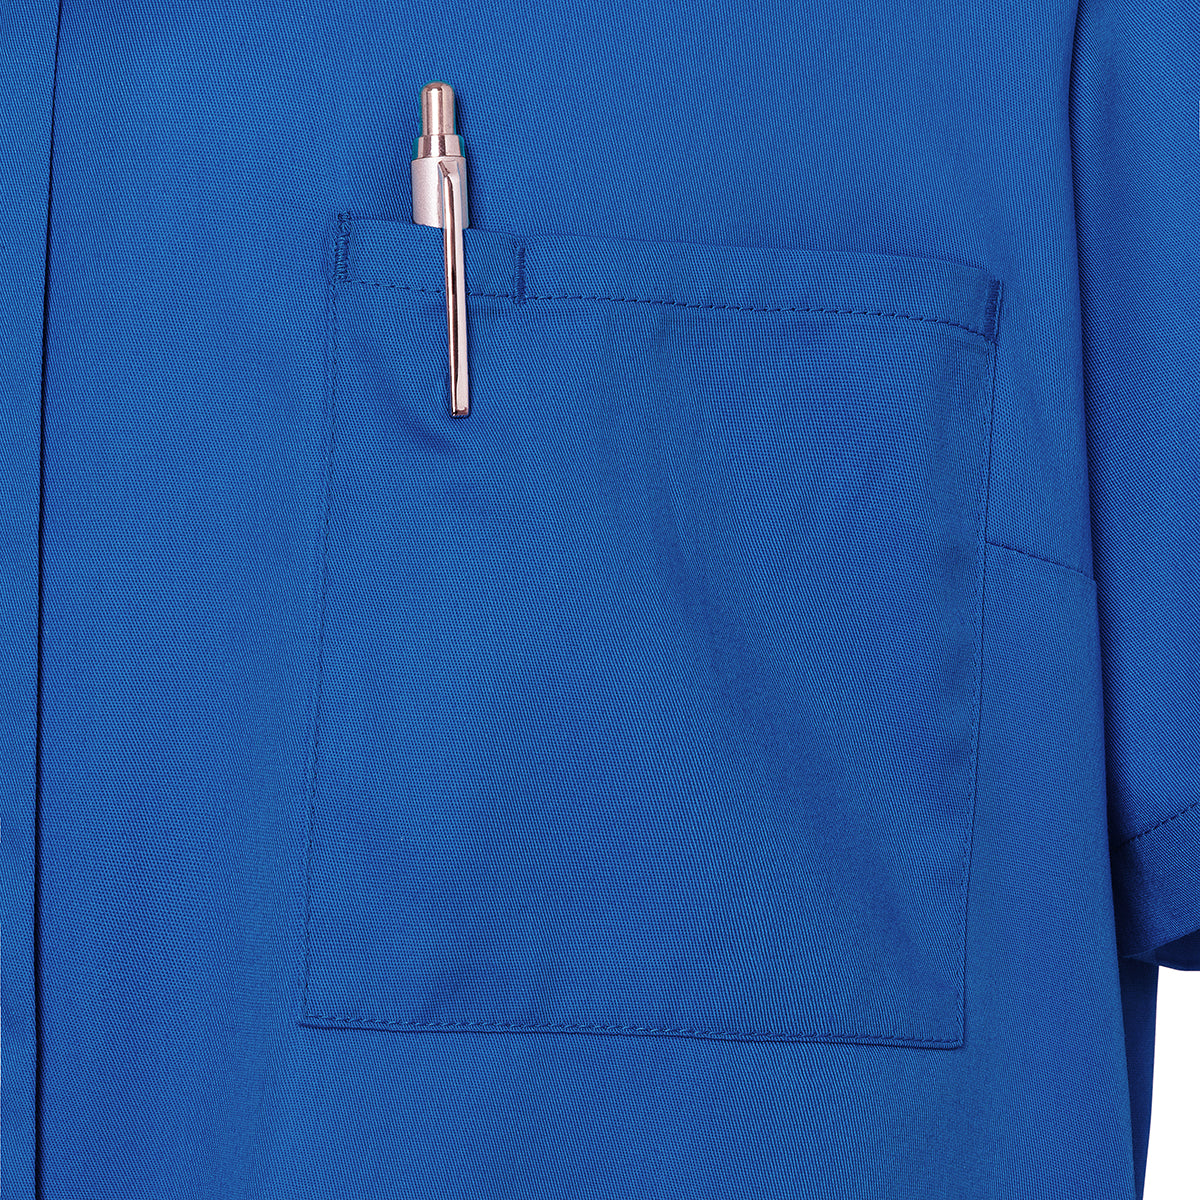 (6 stk.) Karlowsky - Kortærmet jakke til kvinder Essential - Royal Blue - Størrelse: 46